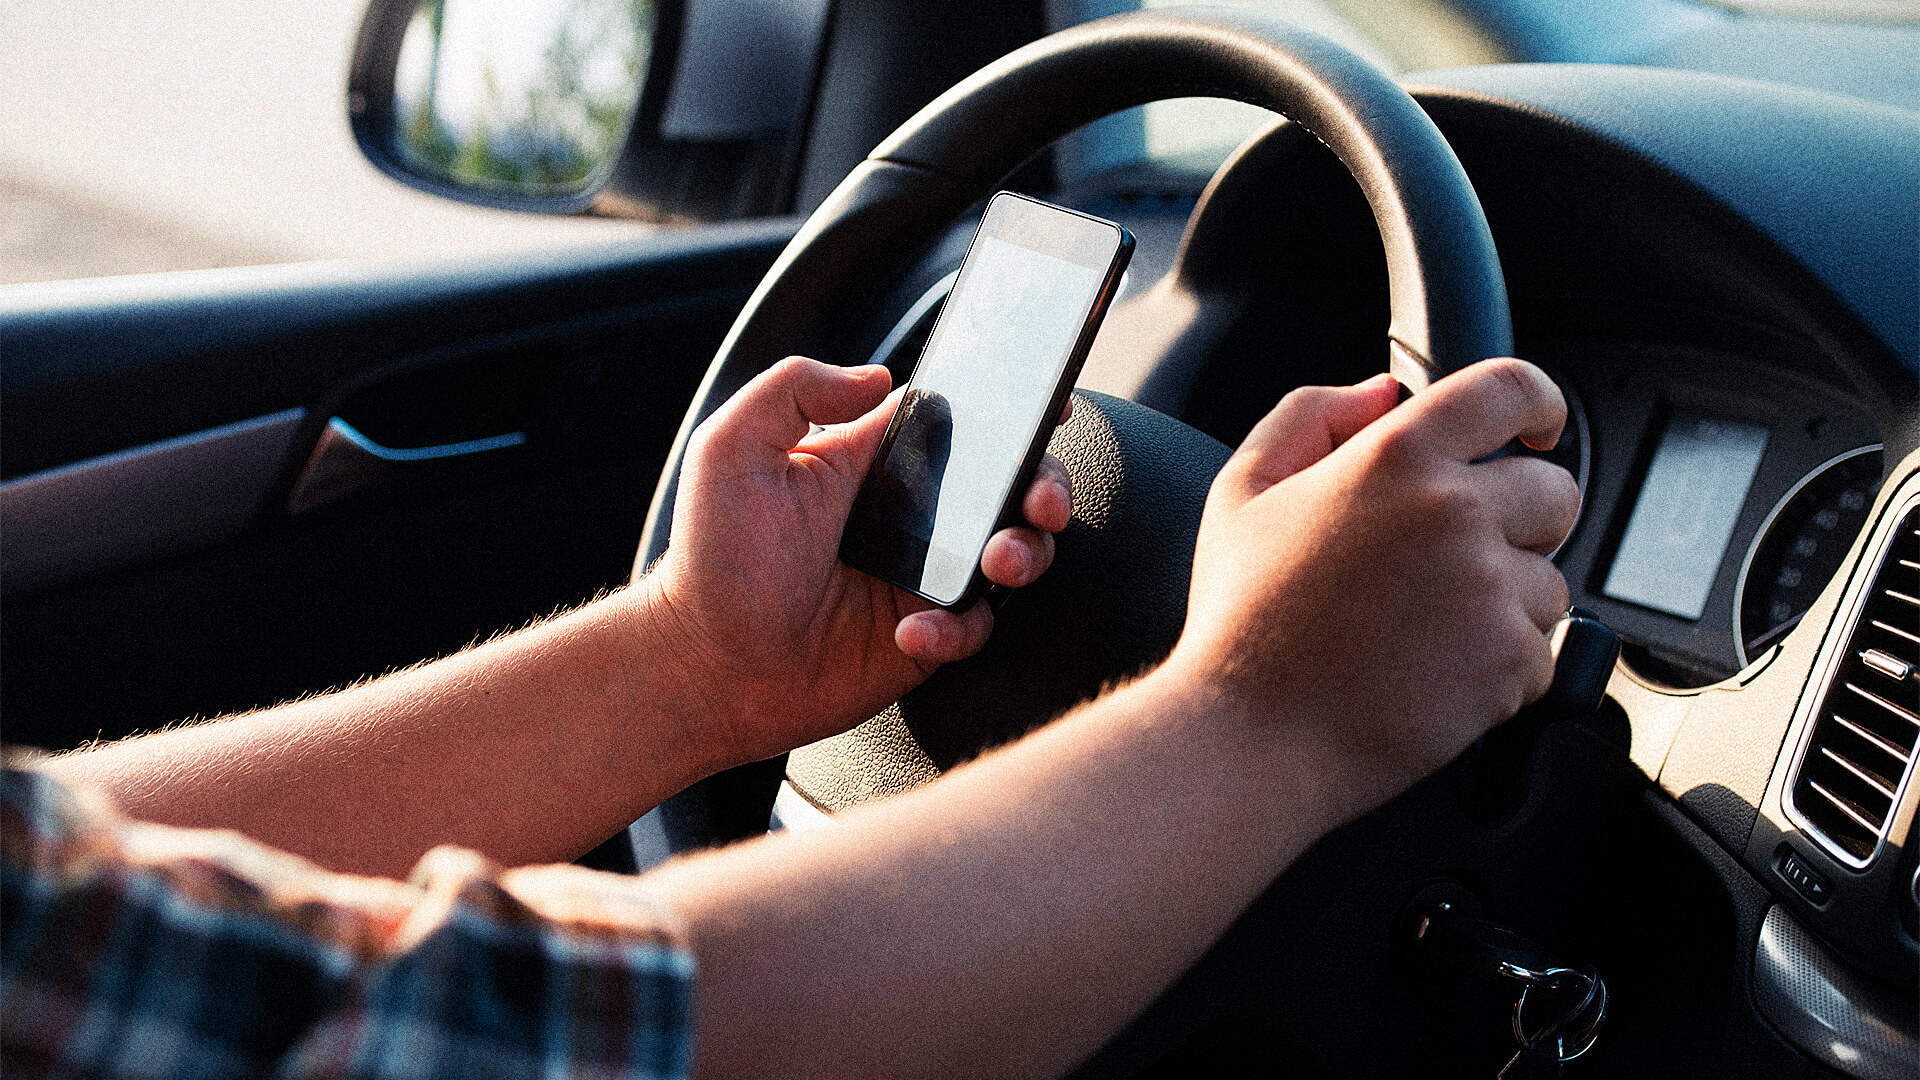 Συσκευή που αναγνωρίζει αν οι οδηγοί χρησιμοποιούν smartphone